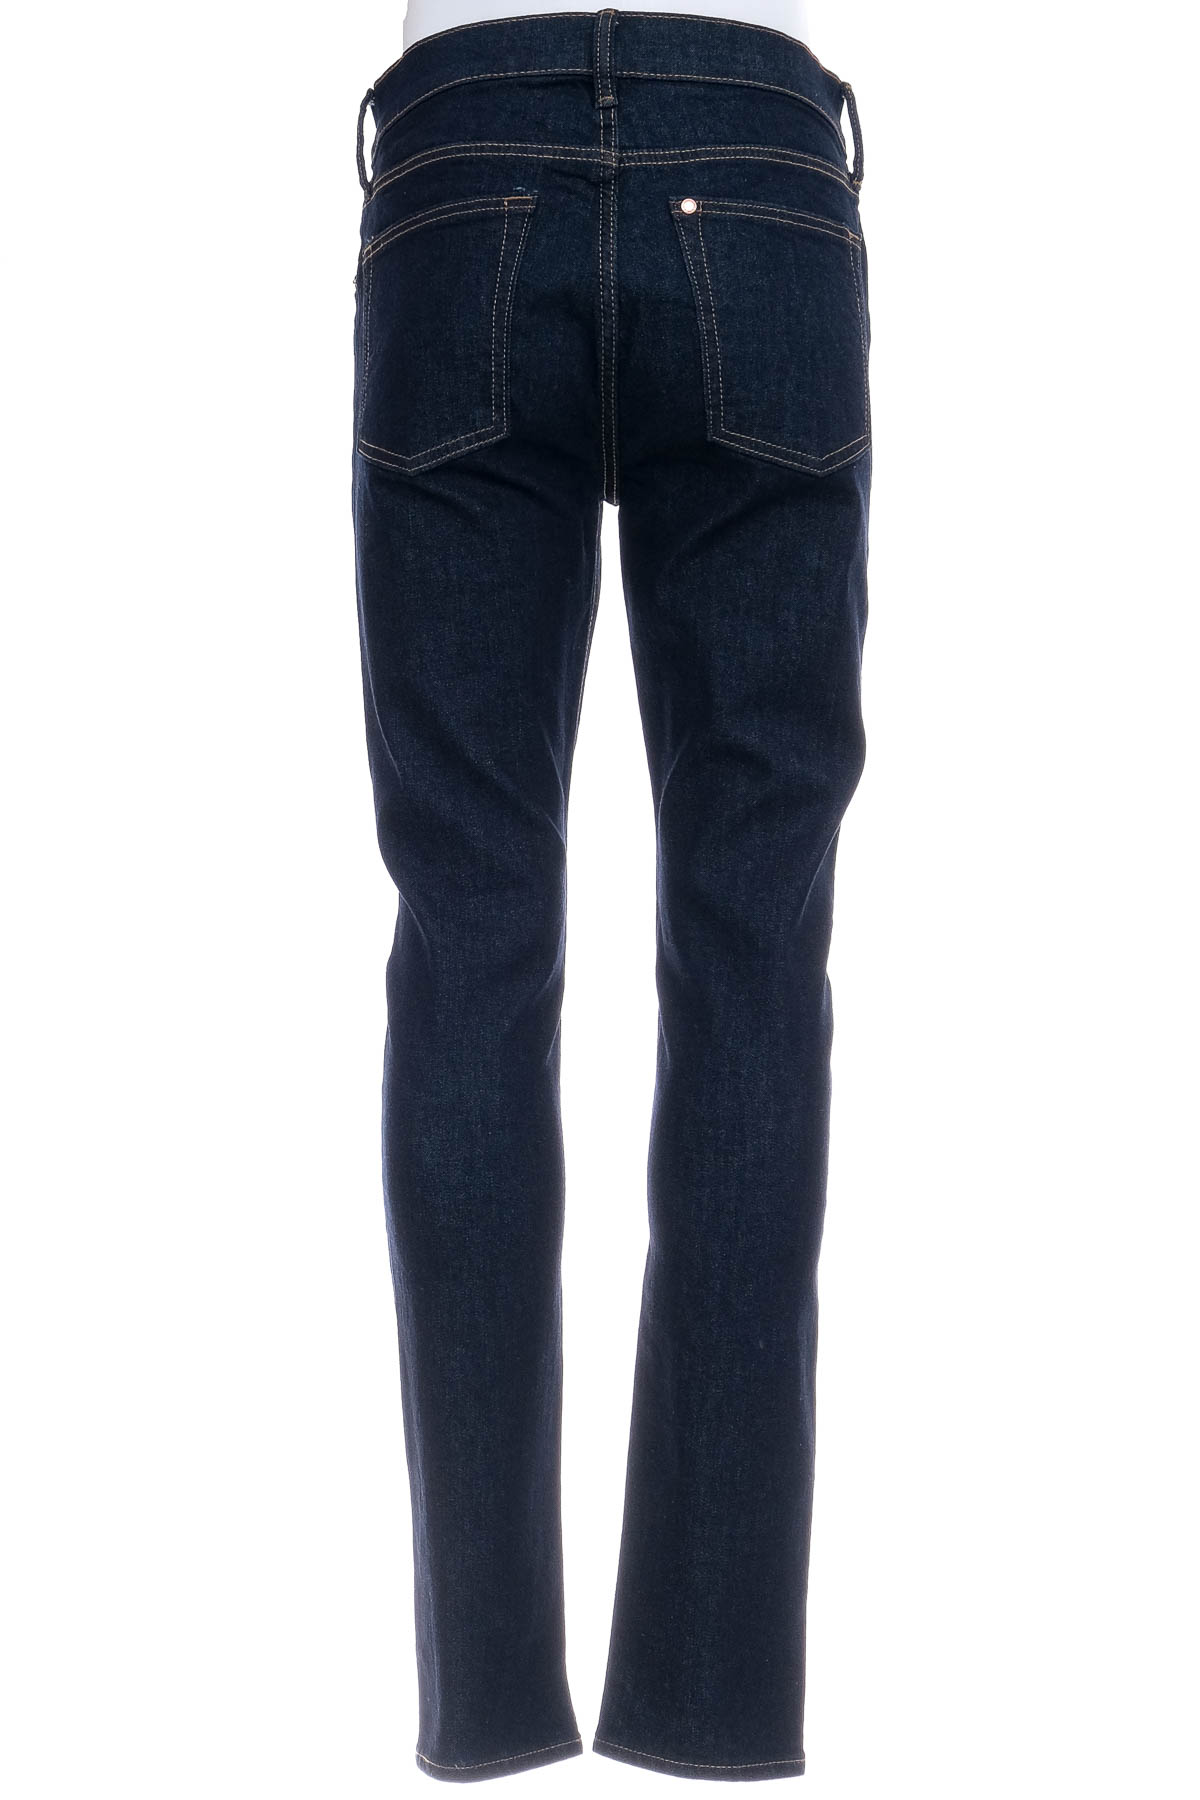 Men's jeans - H&M - 1